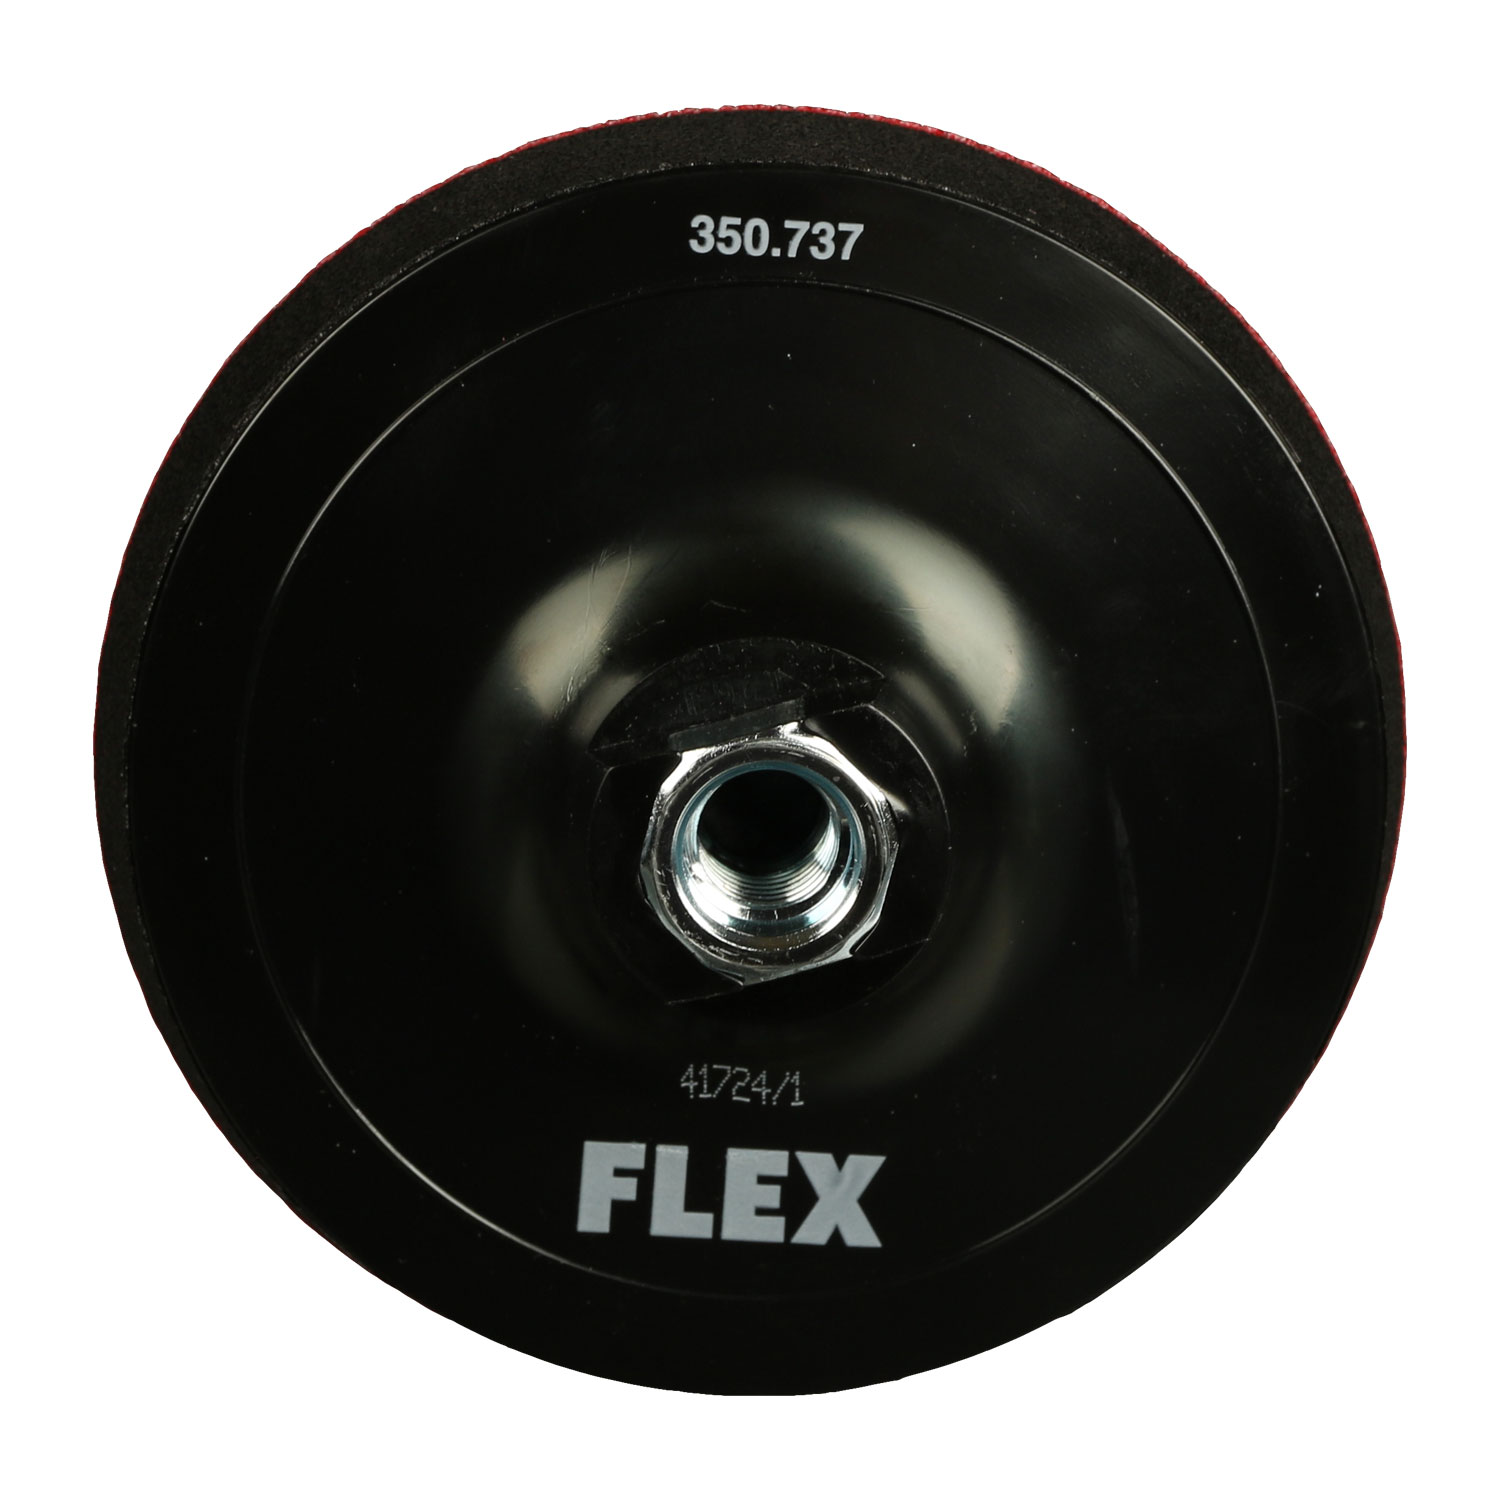 Flex Klett-Teller BP-M D125 M14 350.737